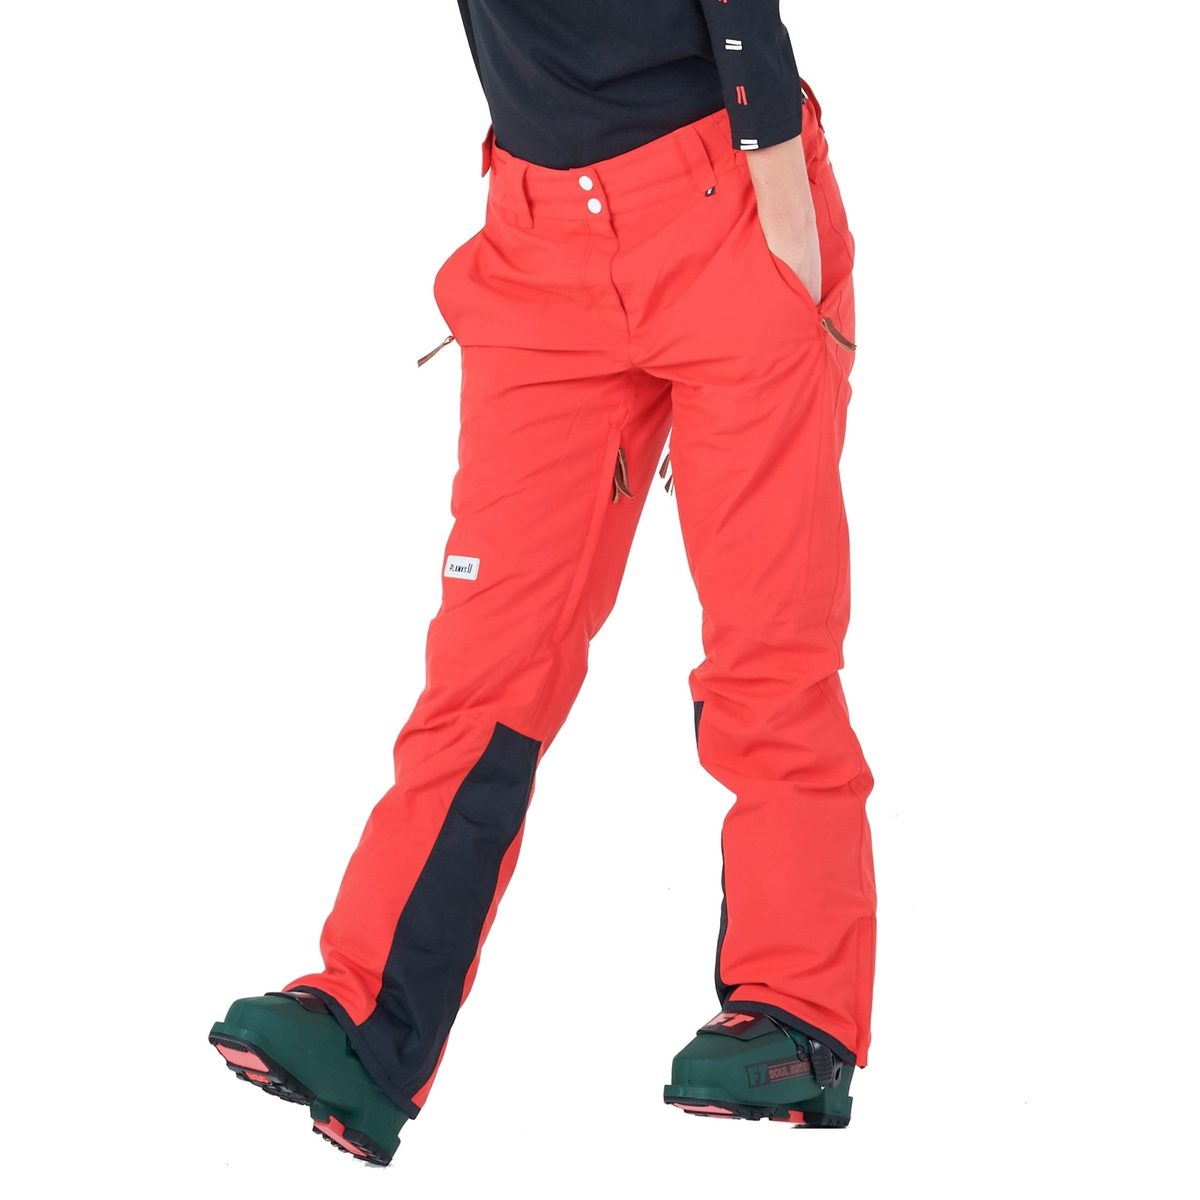 rh+ Slim Insulated Ski Pant (Women's)